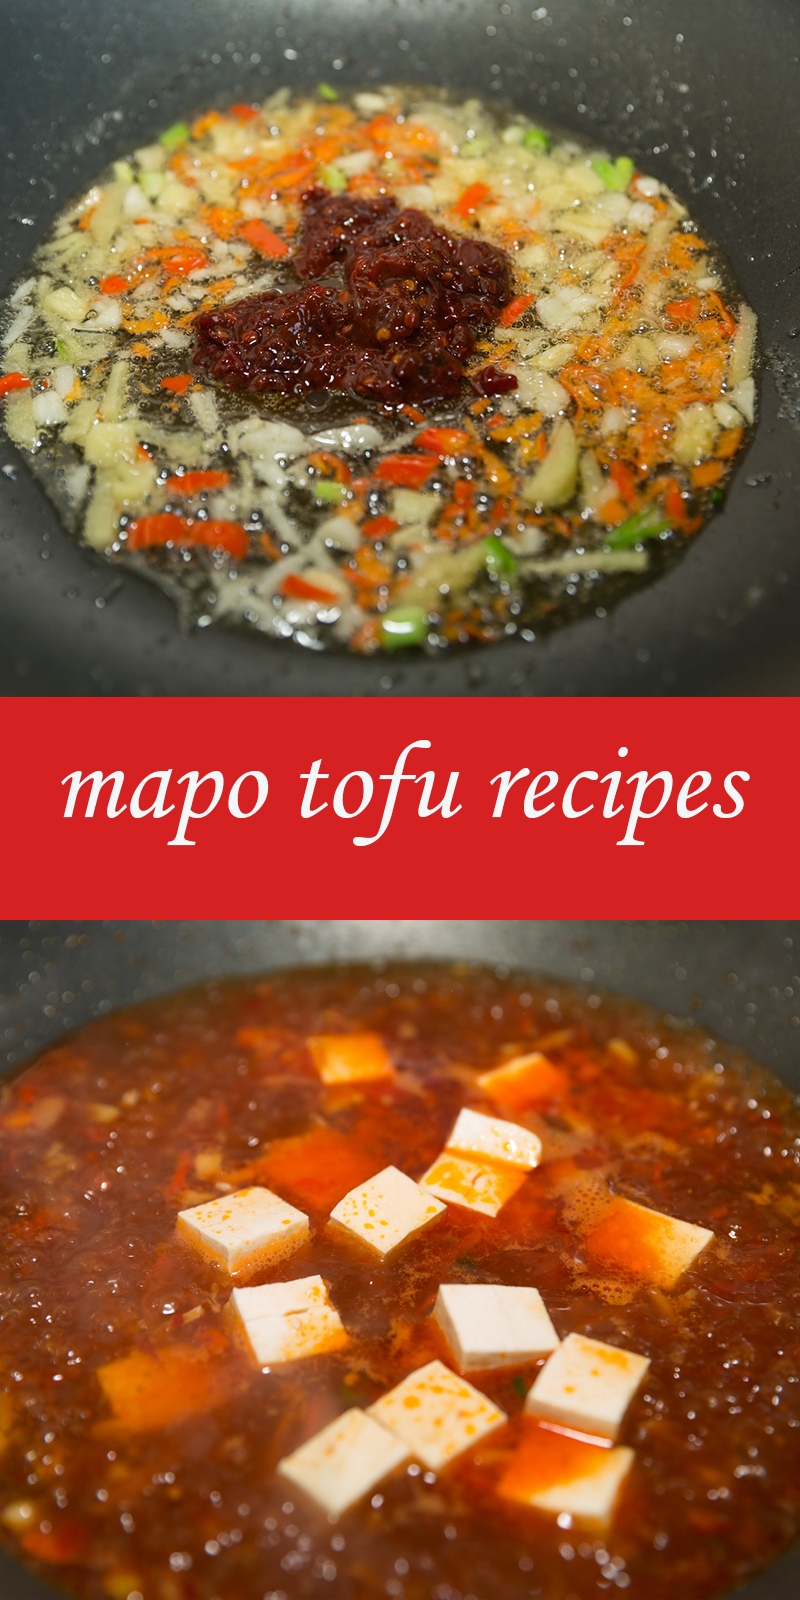 mapo tofu recipes